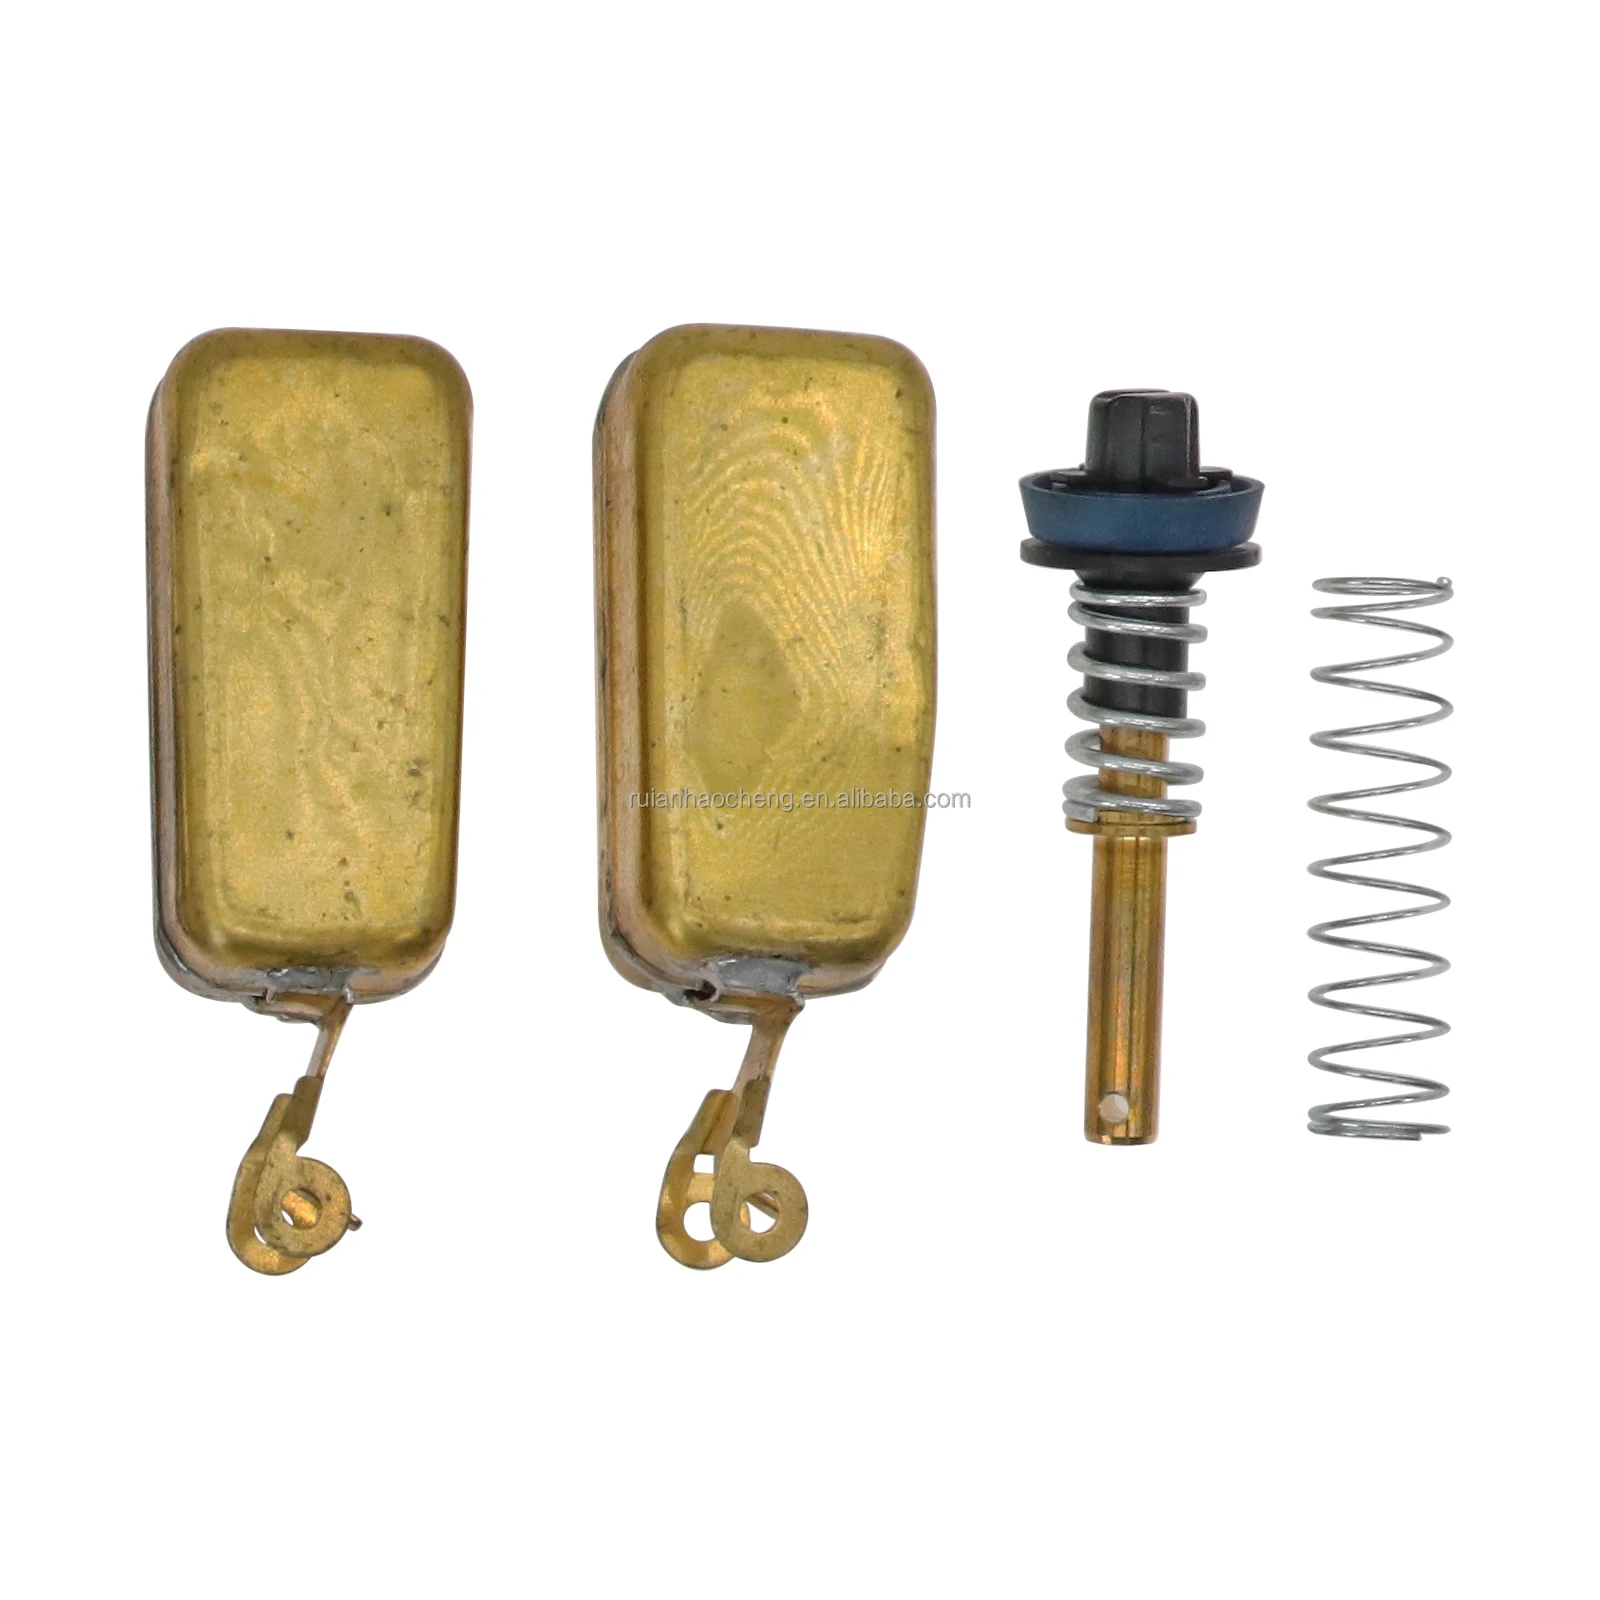 Carburetor Rebuild Kit For Edelbrock 1477 1400 1404 1405 1406 1407 1411 1409 With Brass Floats